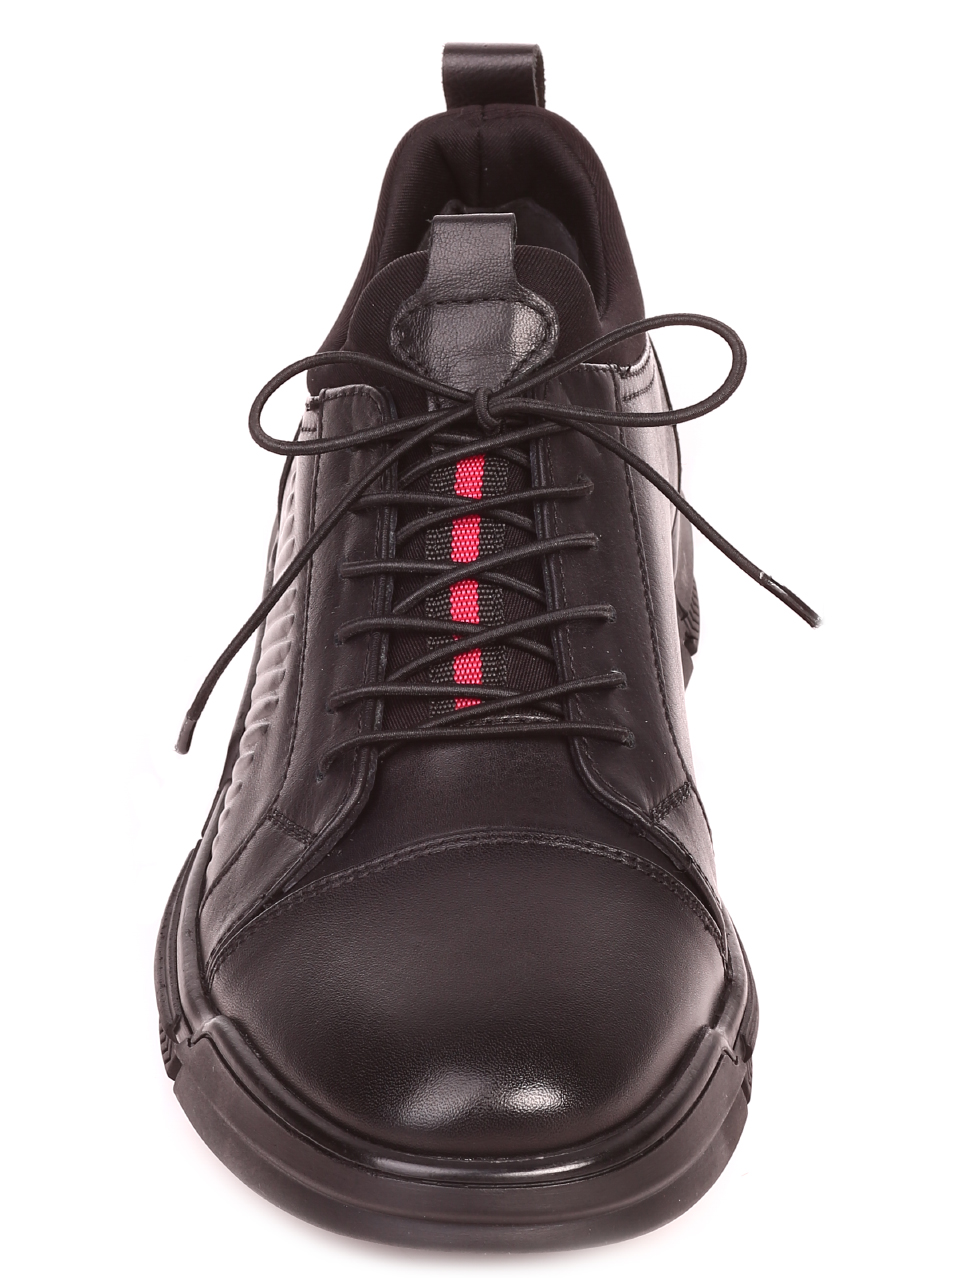 Ежедневни мъжки обувки от естествена кожа 7AT-21873 black